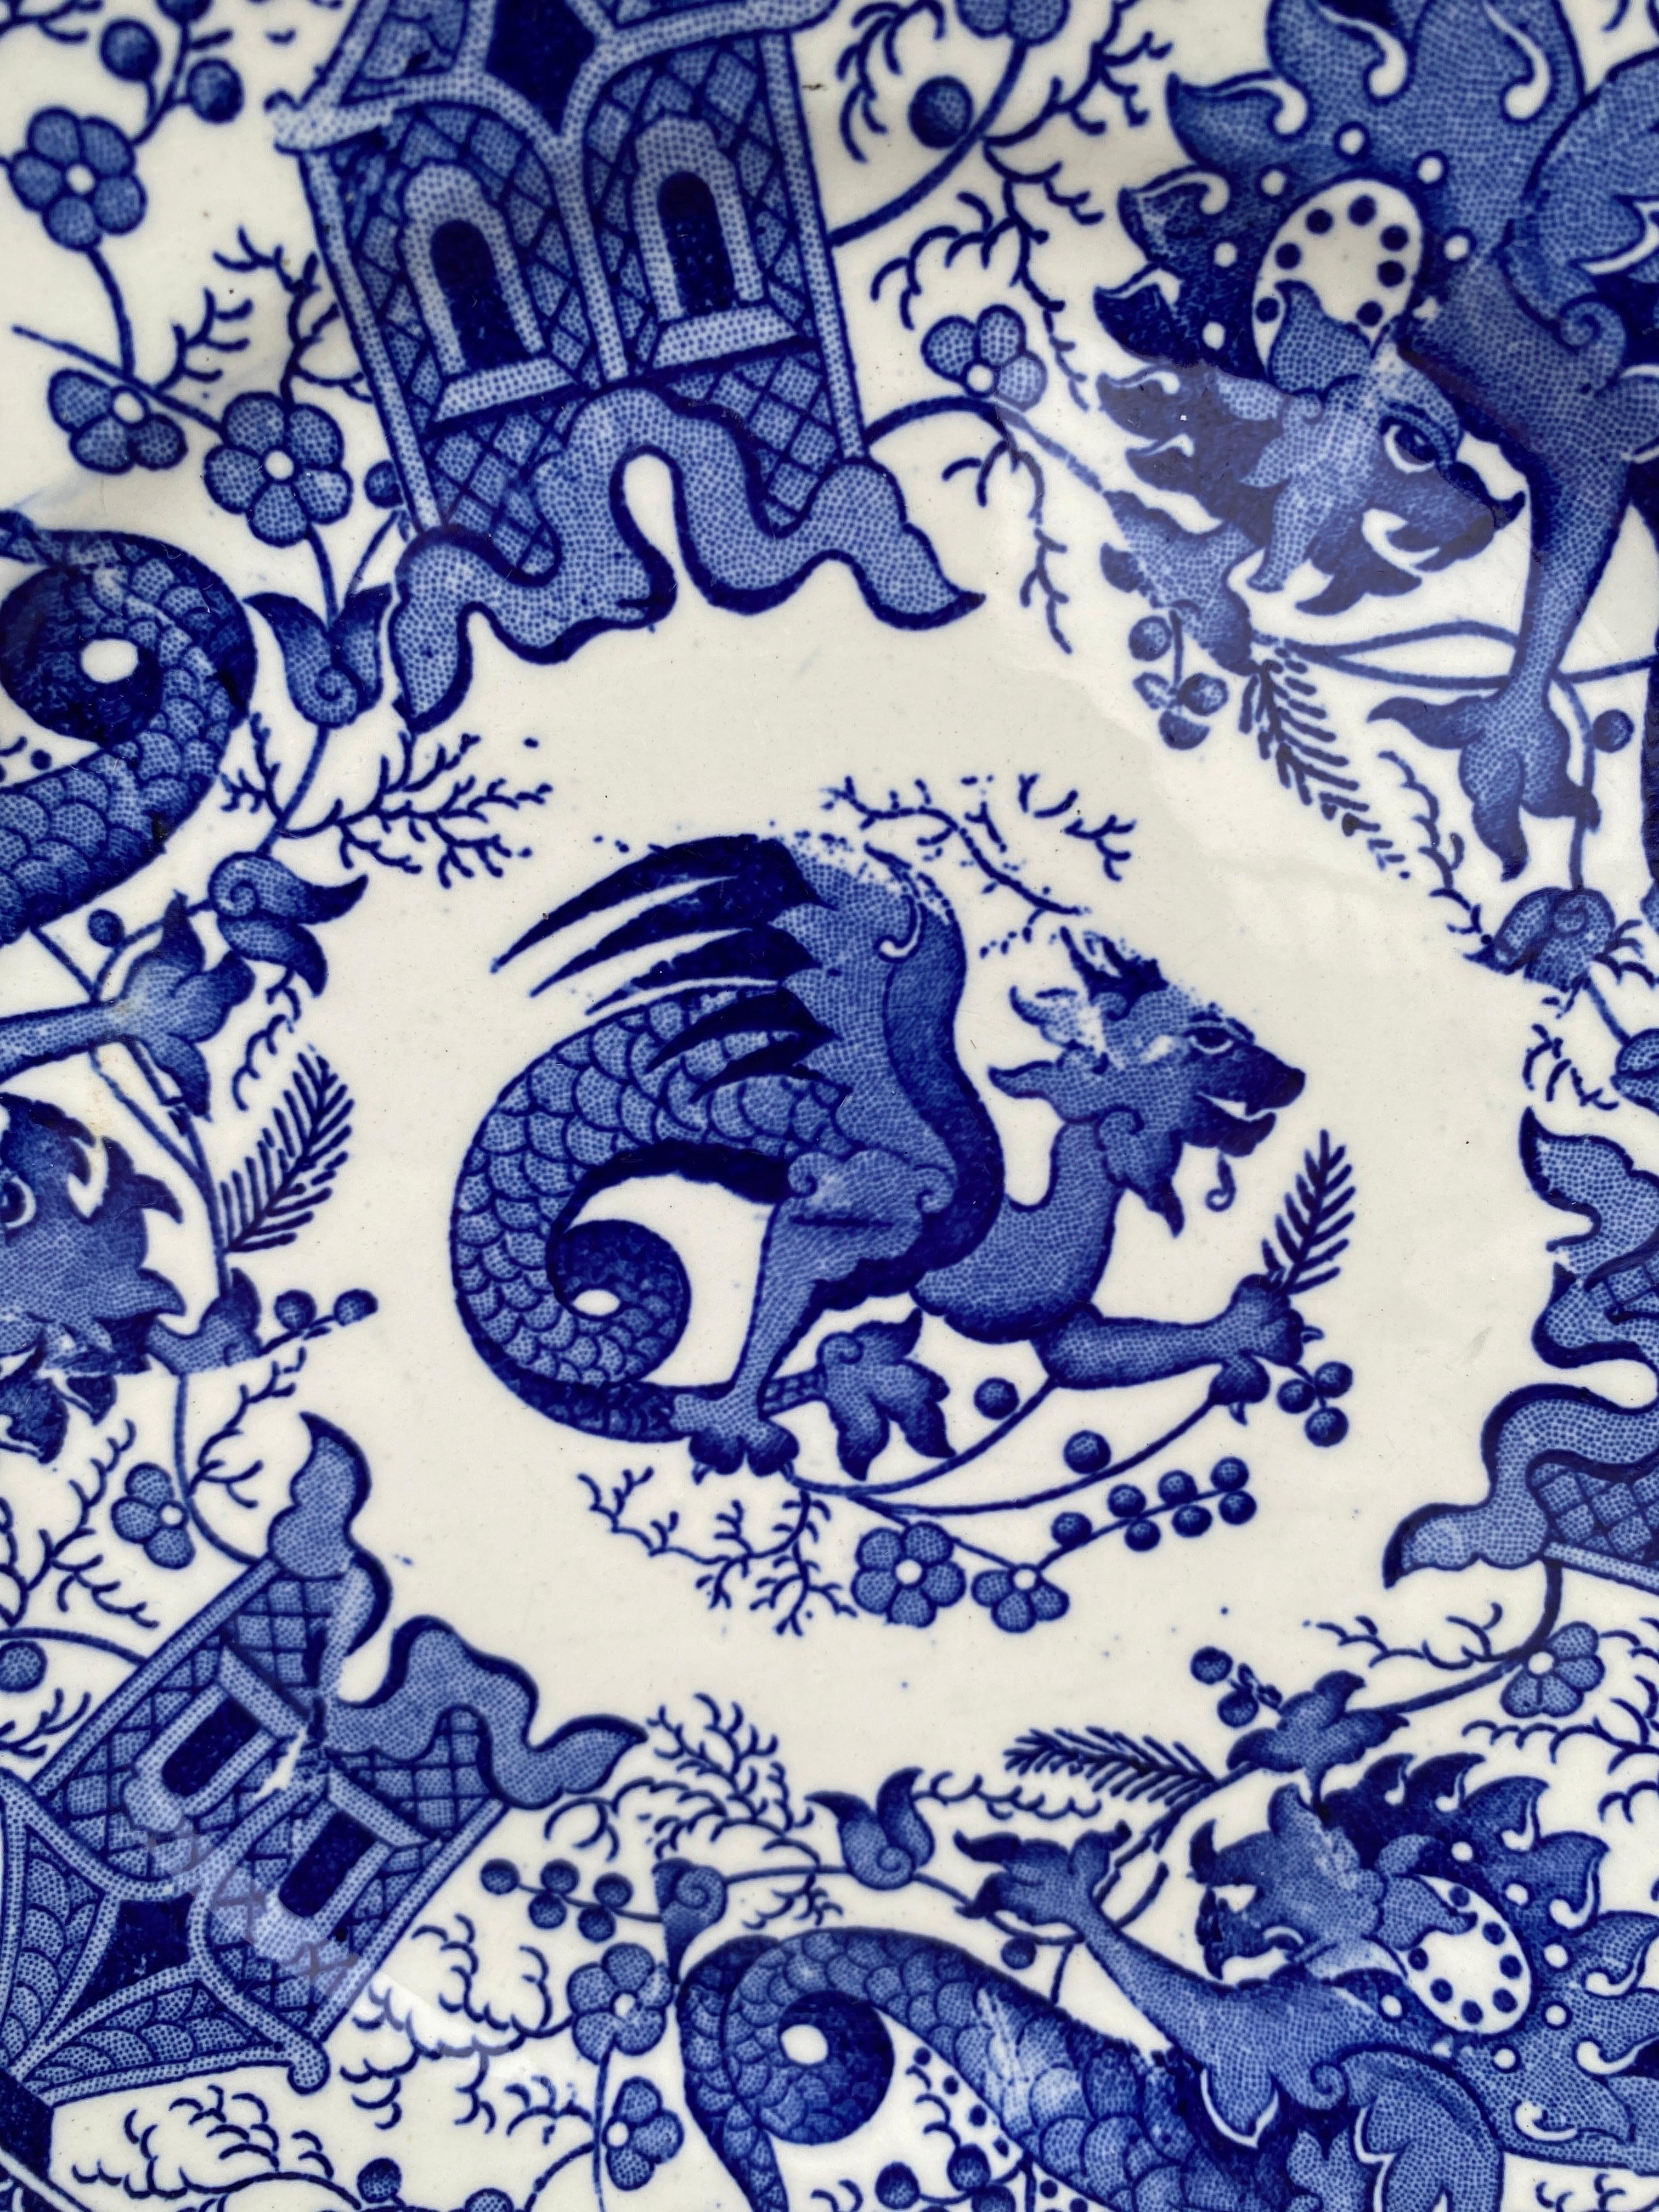 Französisch 19. Jahrhundert Blau-Weiß-Dessertteller Drache signiert Sarreguemines.
Transferware.
Asiatisches Dekor mit Drachen.
7,8 Zoll Durchmesser.
5 Platten verfügbar.